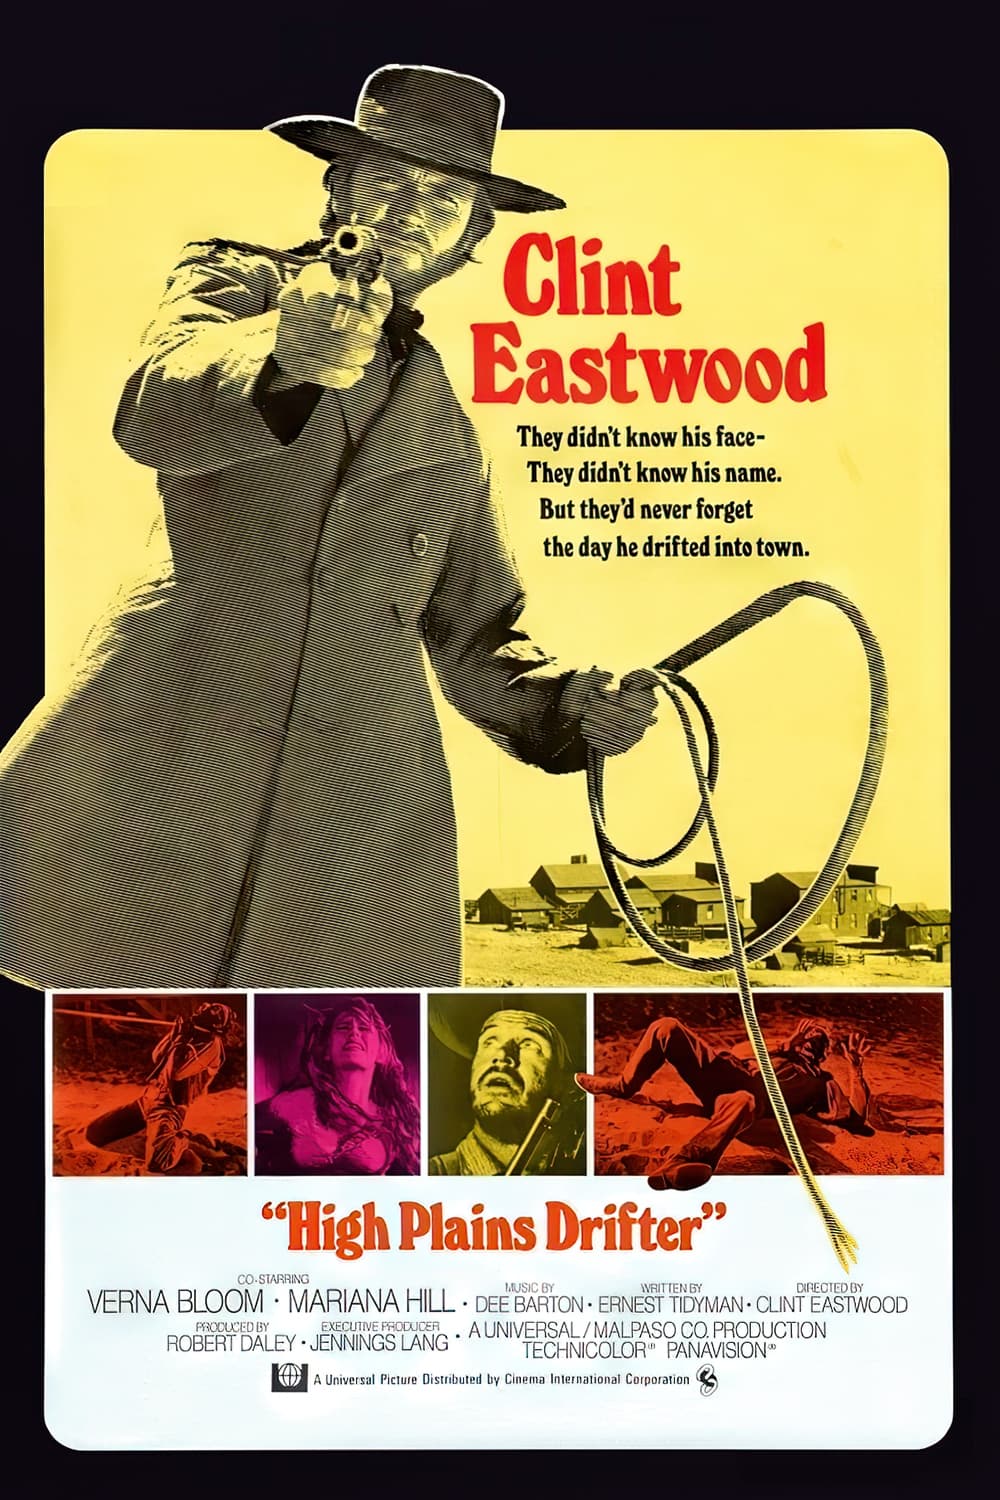 High Plains Drifter Movie poster